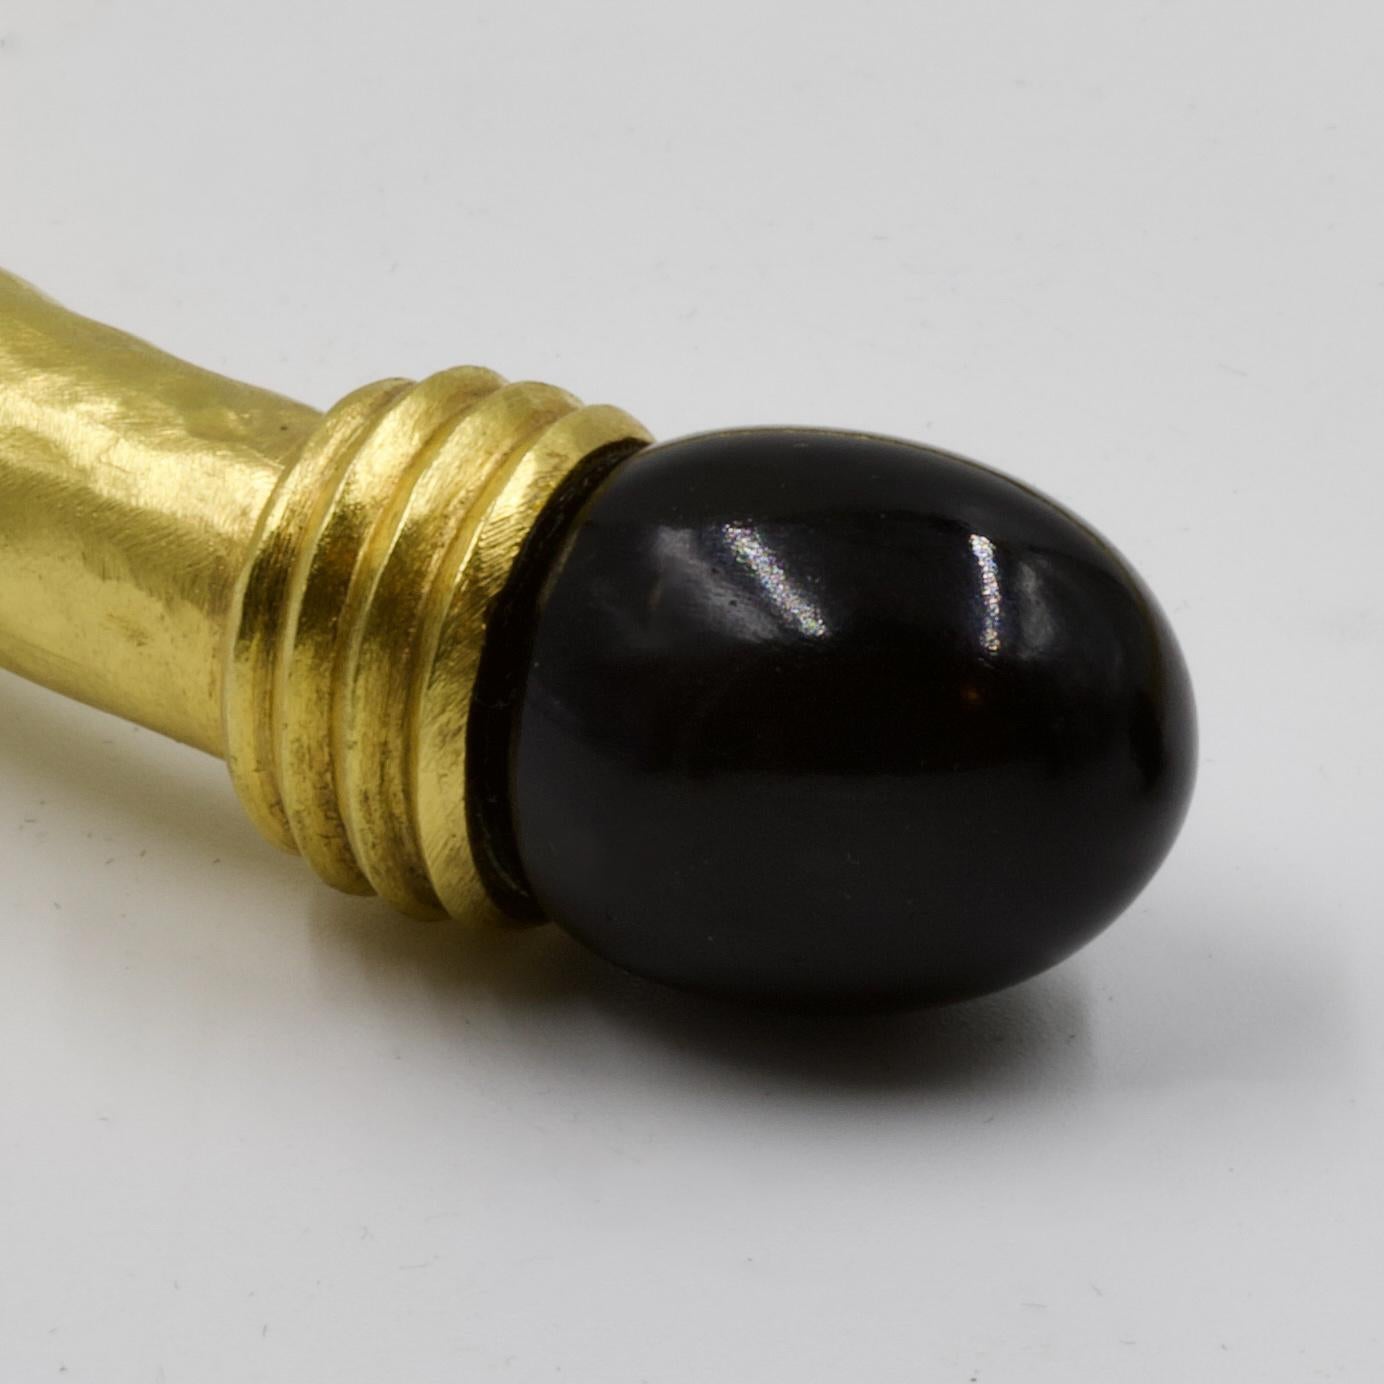 Antiker Drehspiritus, Amati-Gold, mit 2 Kugeln aus schwarzem Onyx, signiert, ca. 1970-1980.                                                                                                               Ilias Lalaounis (1920-2013) verkörpert die